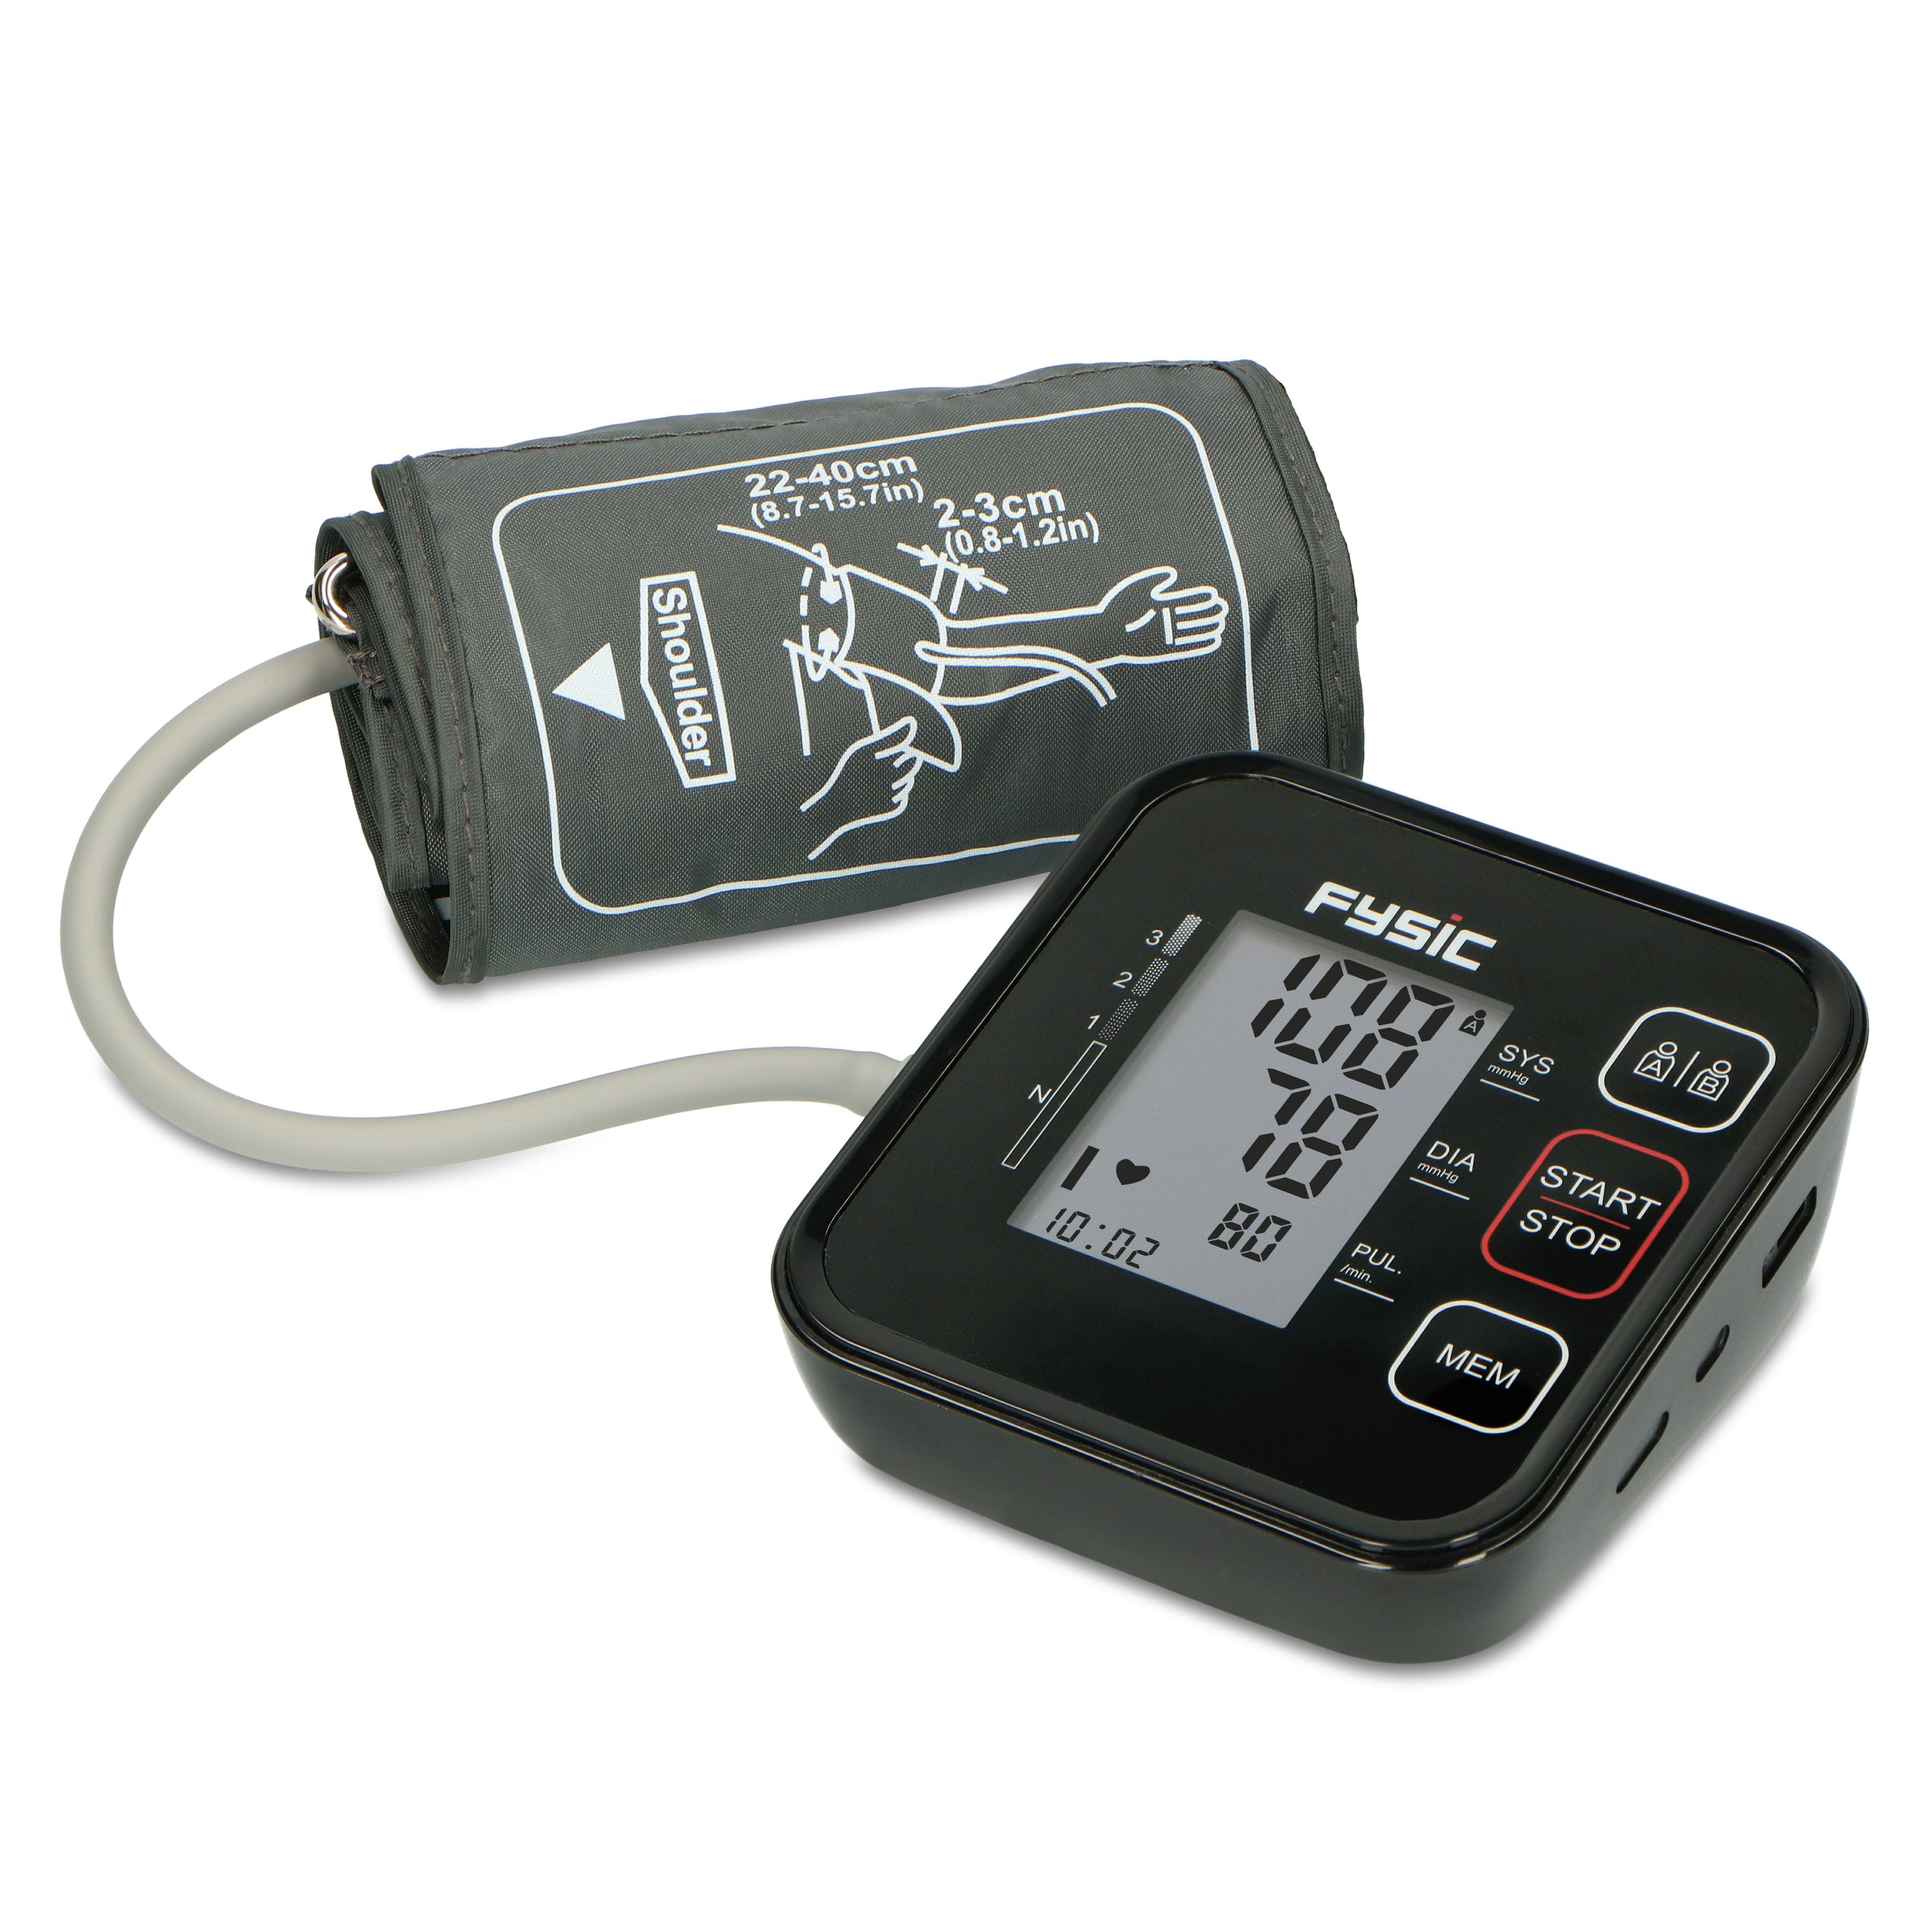 Fysic Blutdruckmessgerät FB150, Oberarm-Blutdruckmessgerät,  präzise&einfach, Ergebnisse in 70 sek., 2 Profile & 120 Speicherplätze